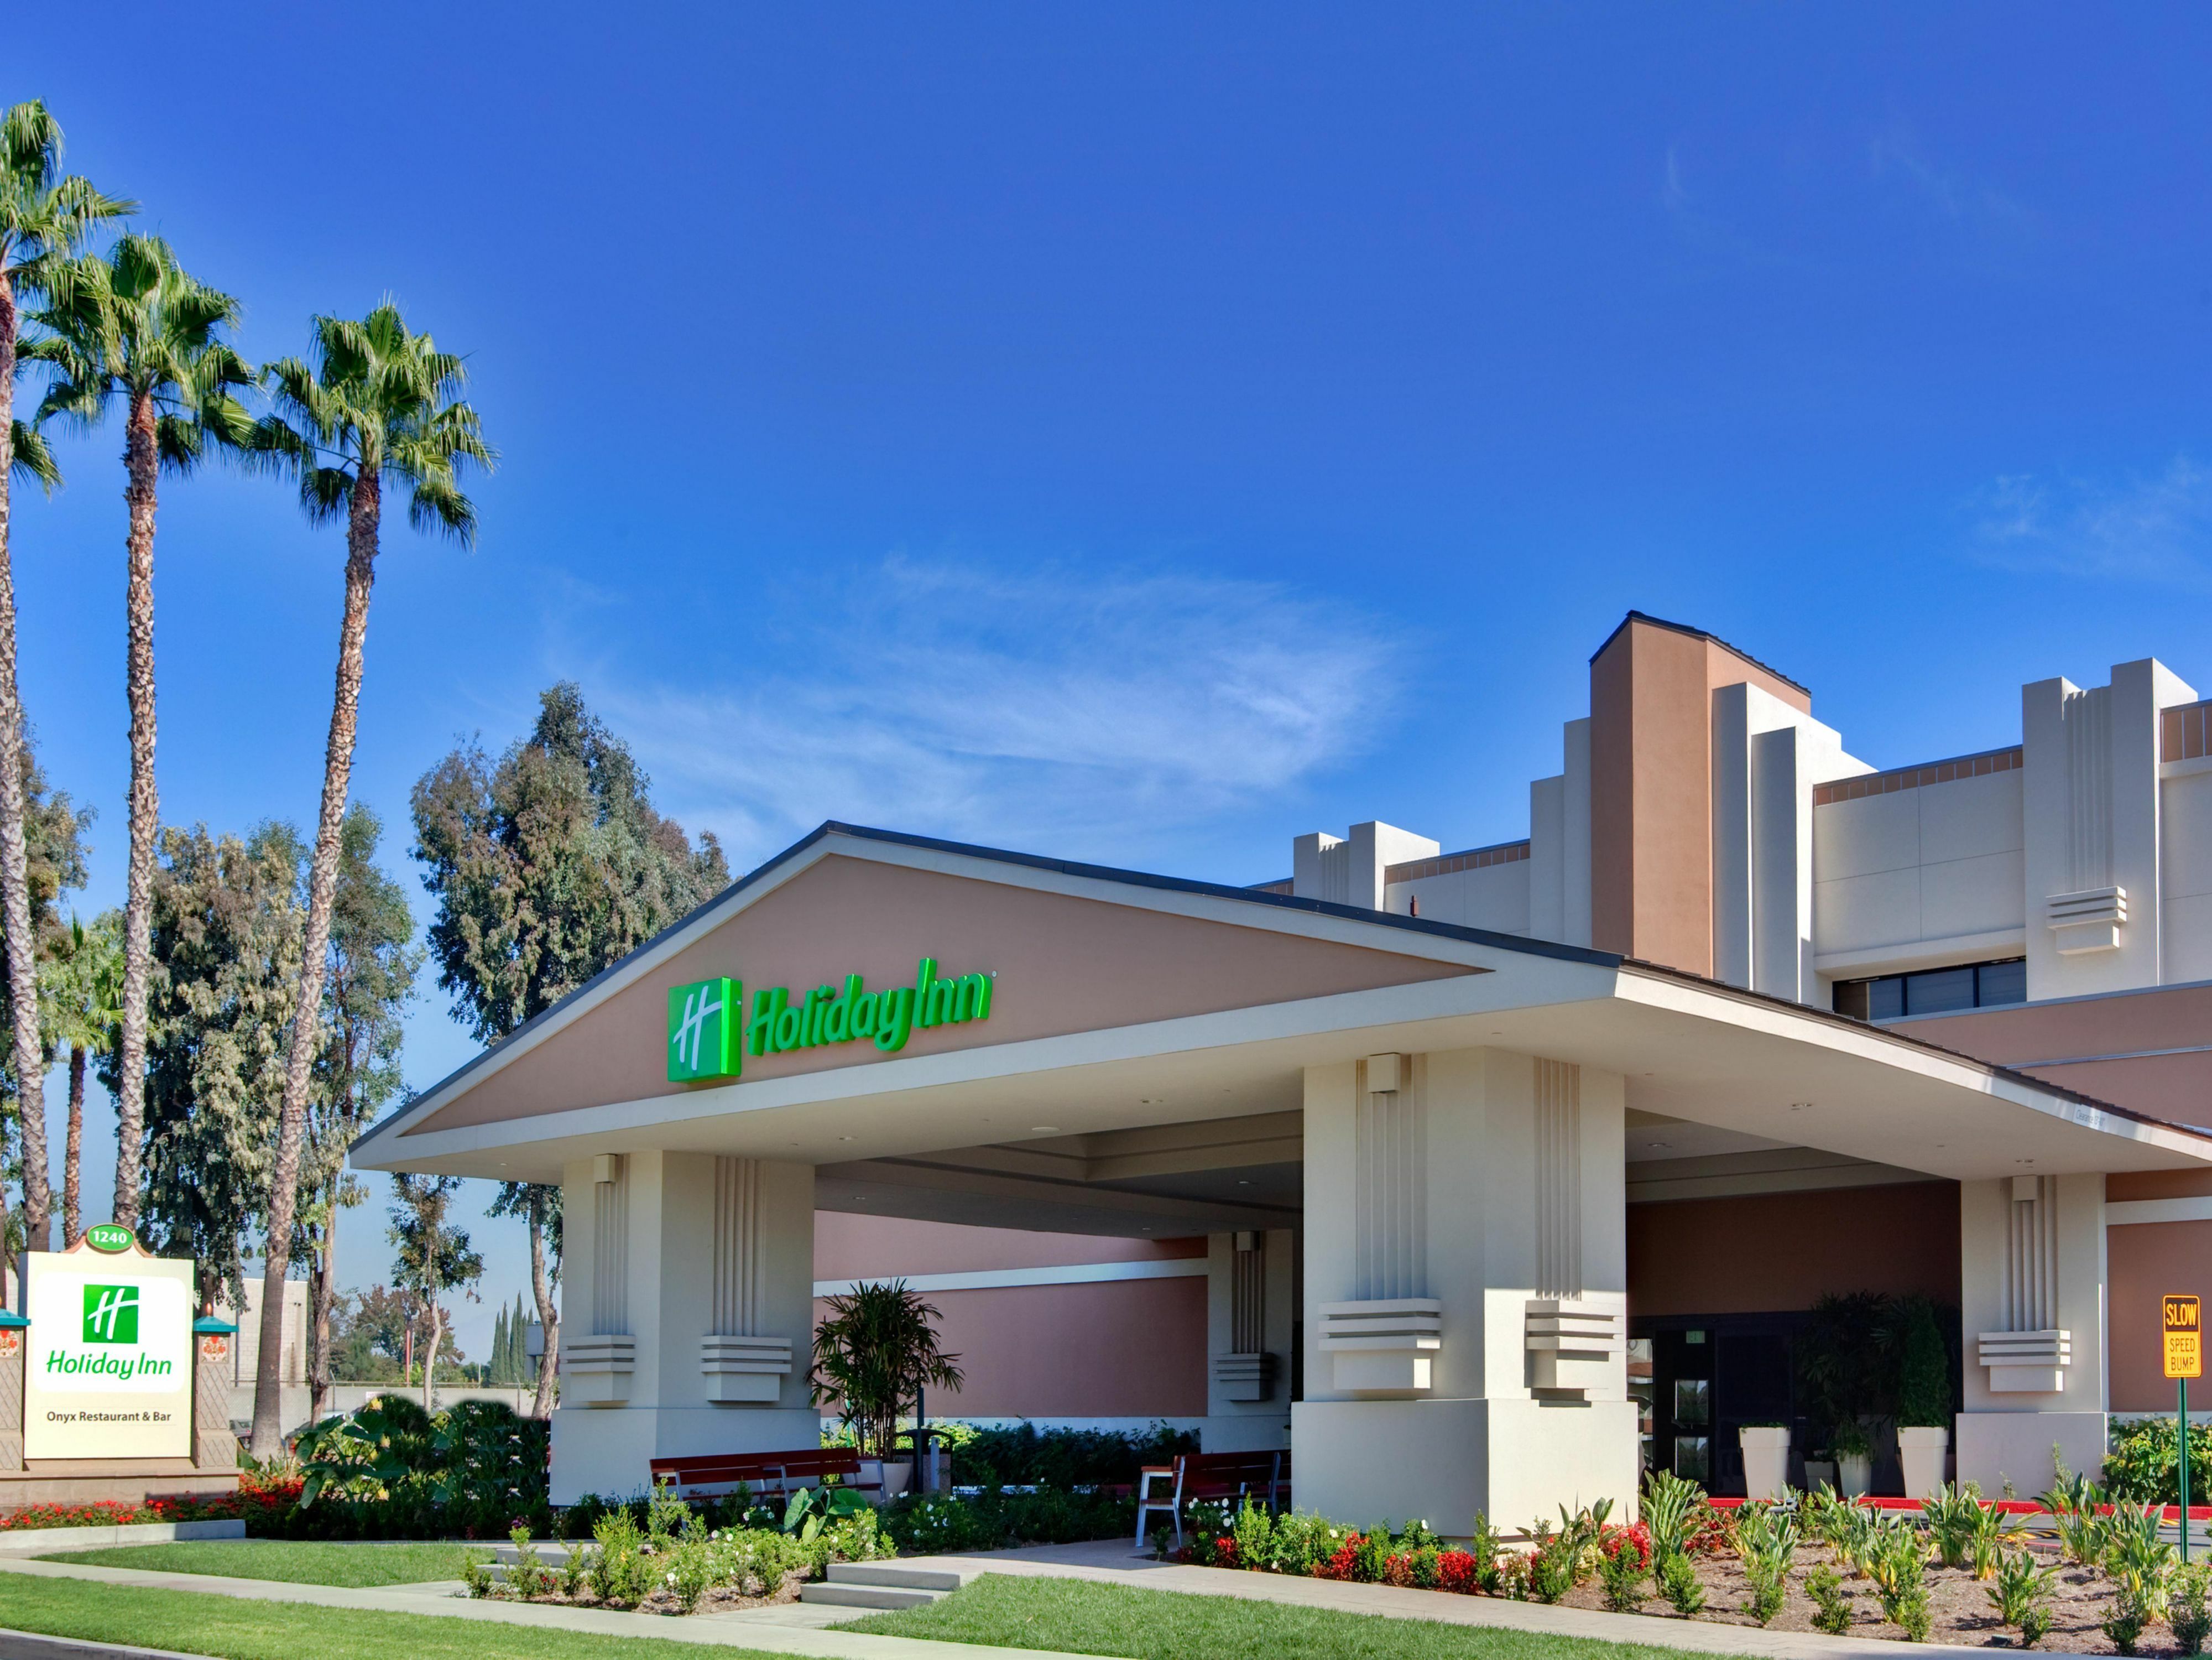 Photo of Holiday Inn Hotel & Suites Anaheim, Anaheim, CA